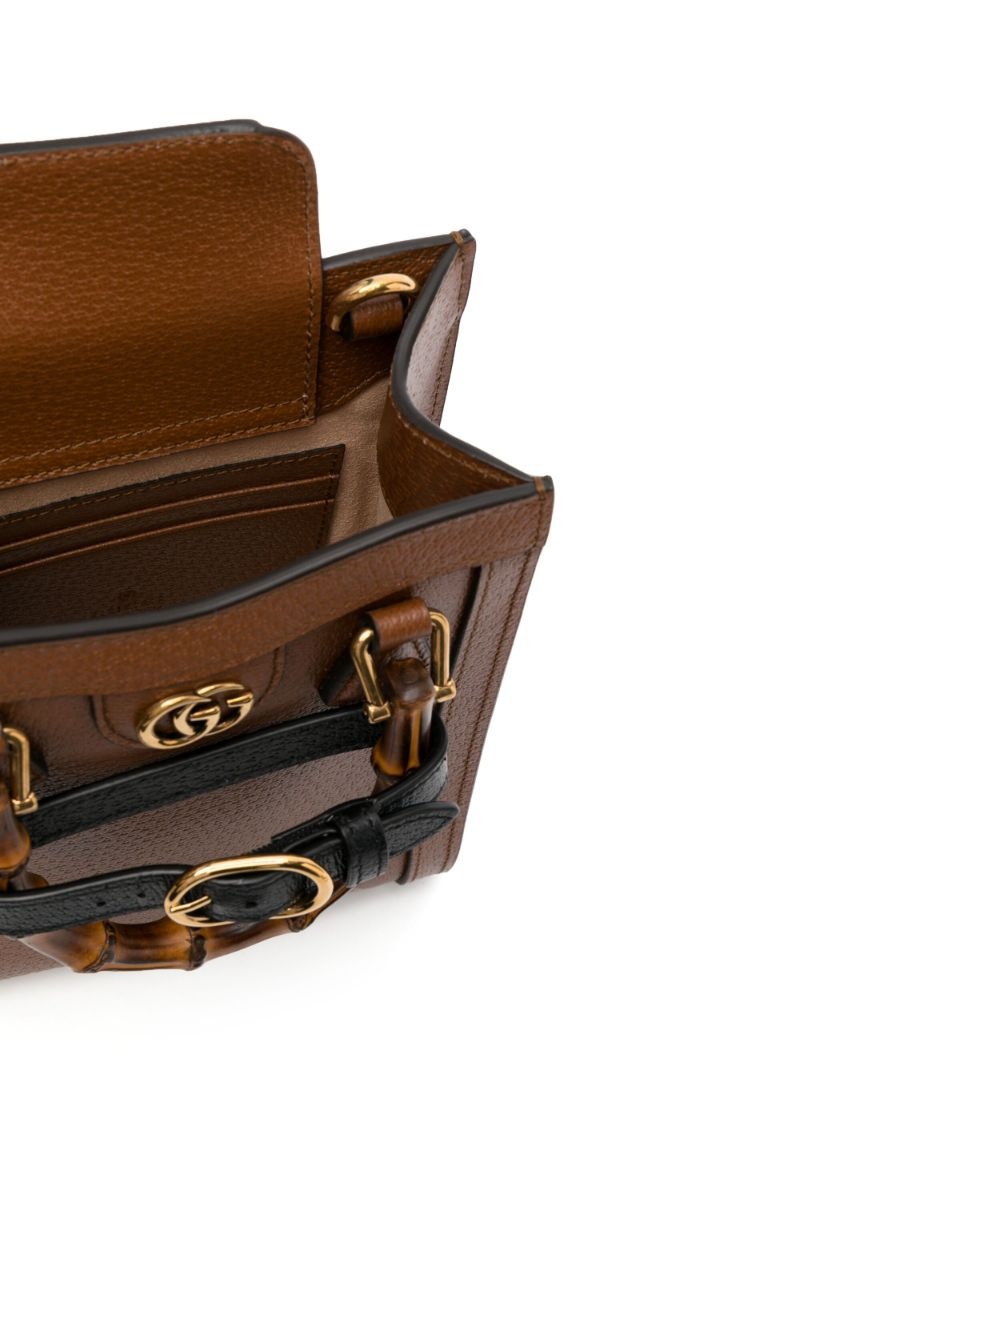 Diana leather mini bag - 2